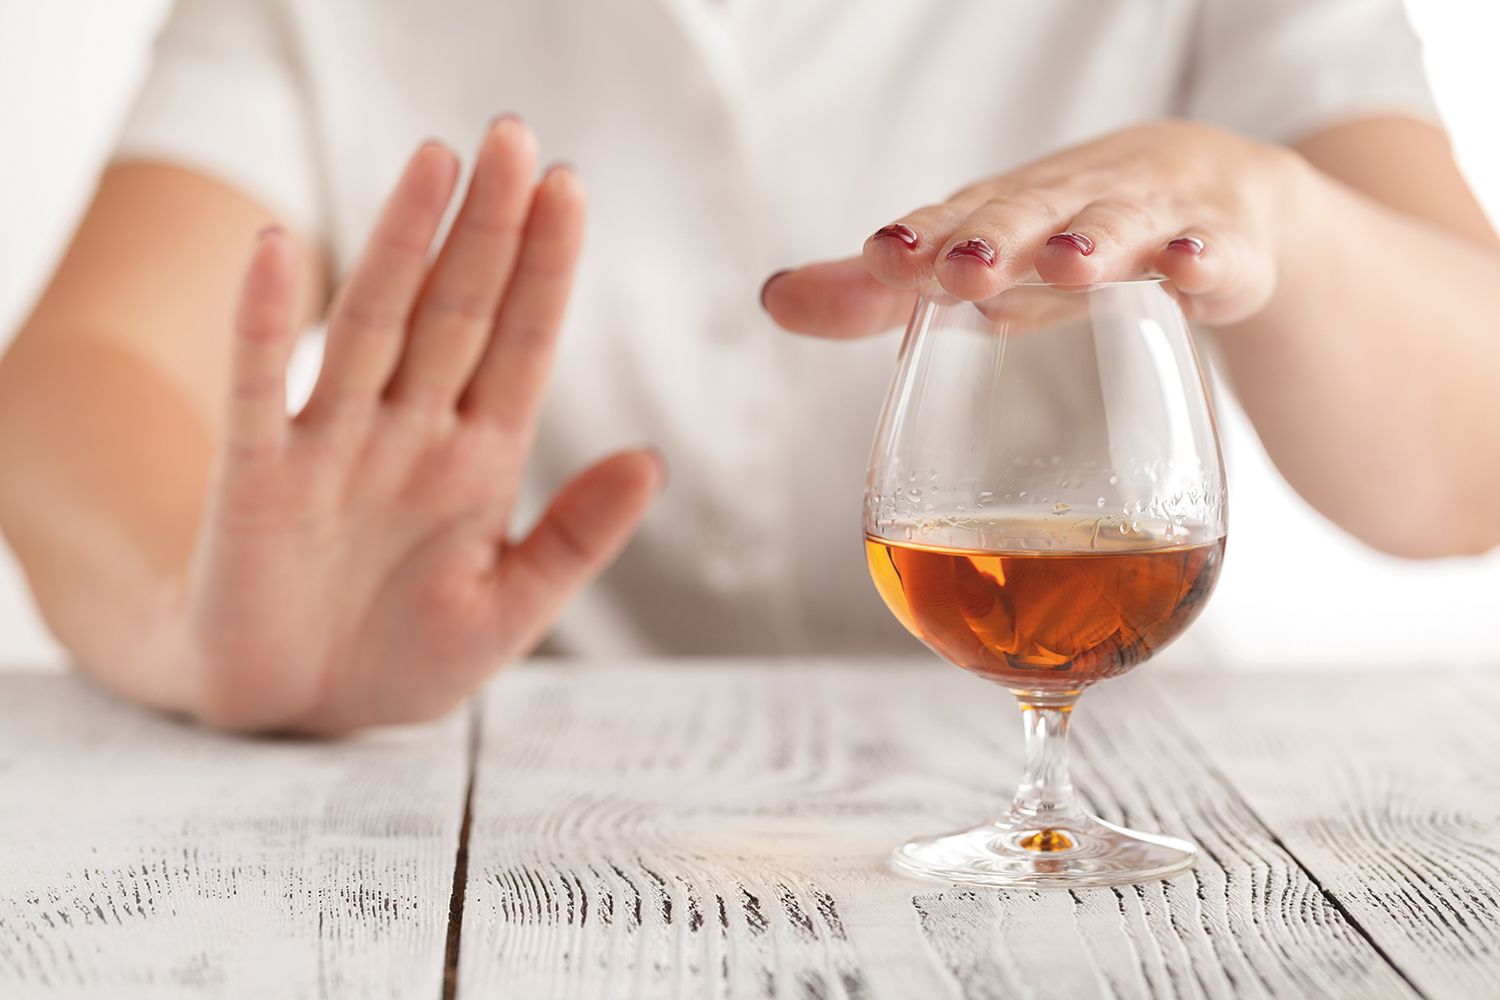 Chiar și consumul redus de alcool poate crește riscul de fibrilaţie atrială